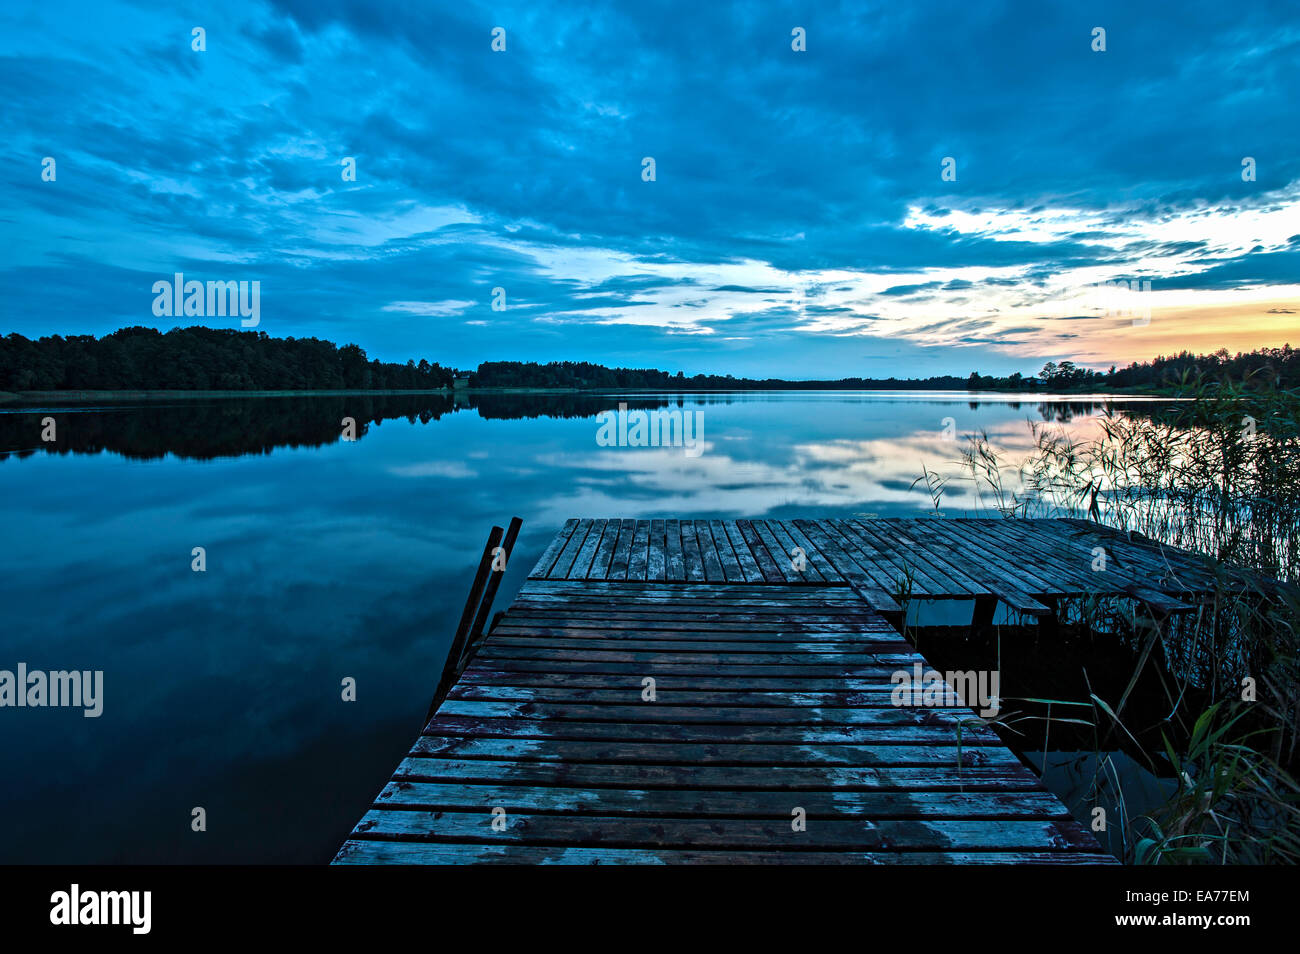 Lake Gieret at dusk, sunset, Poland Stock Photo